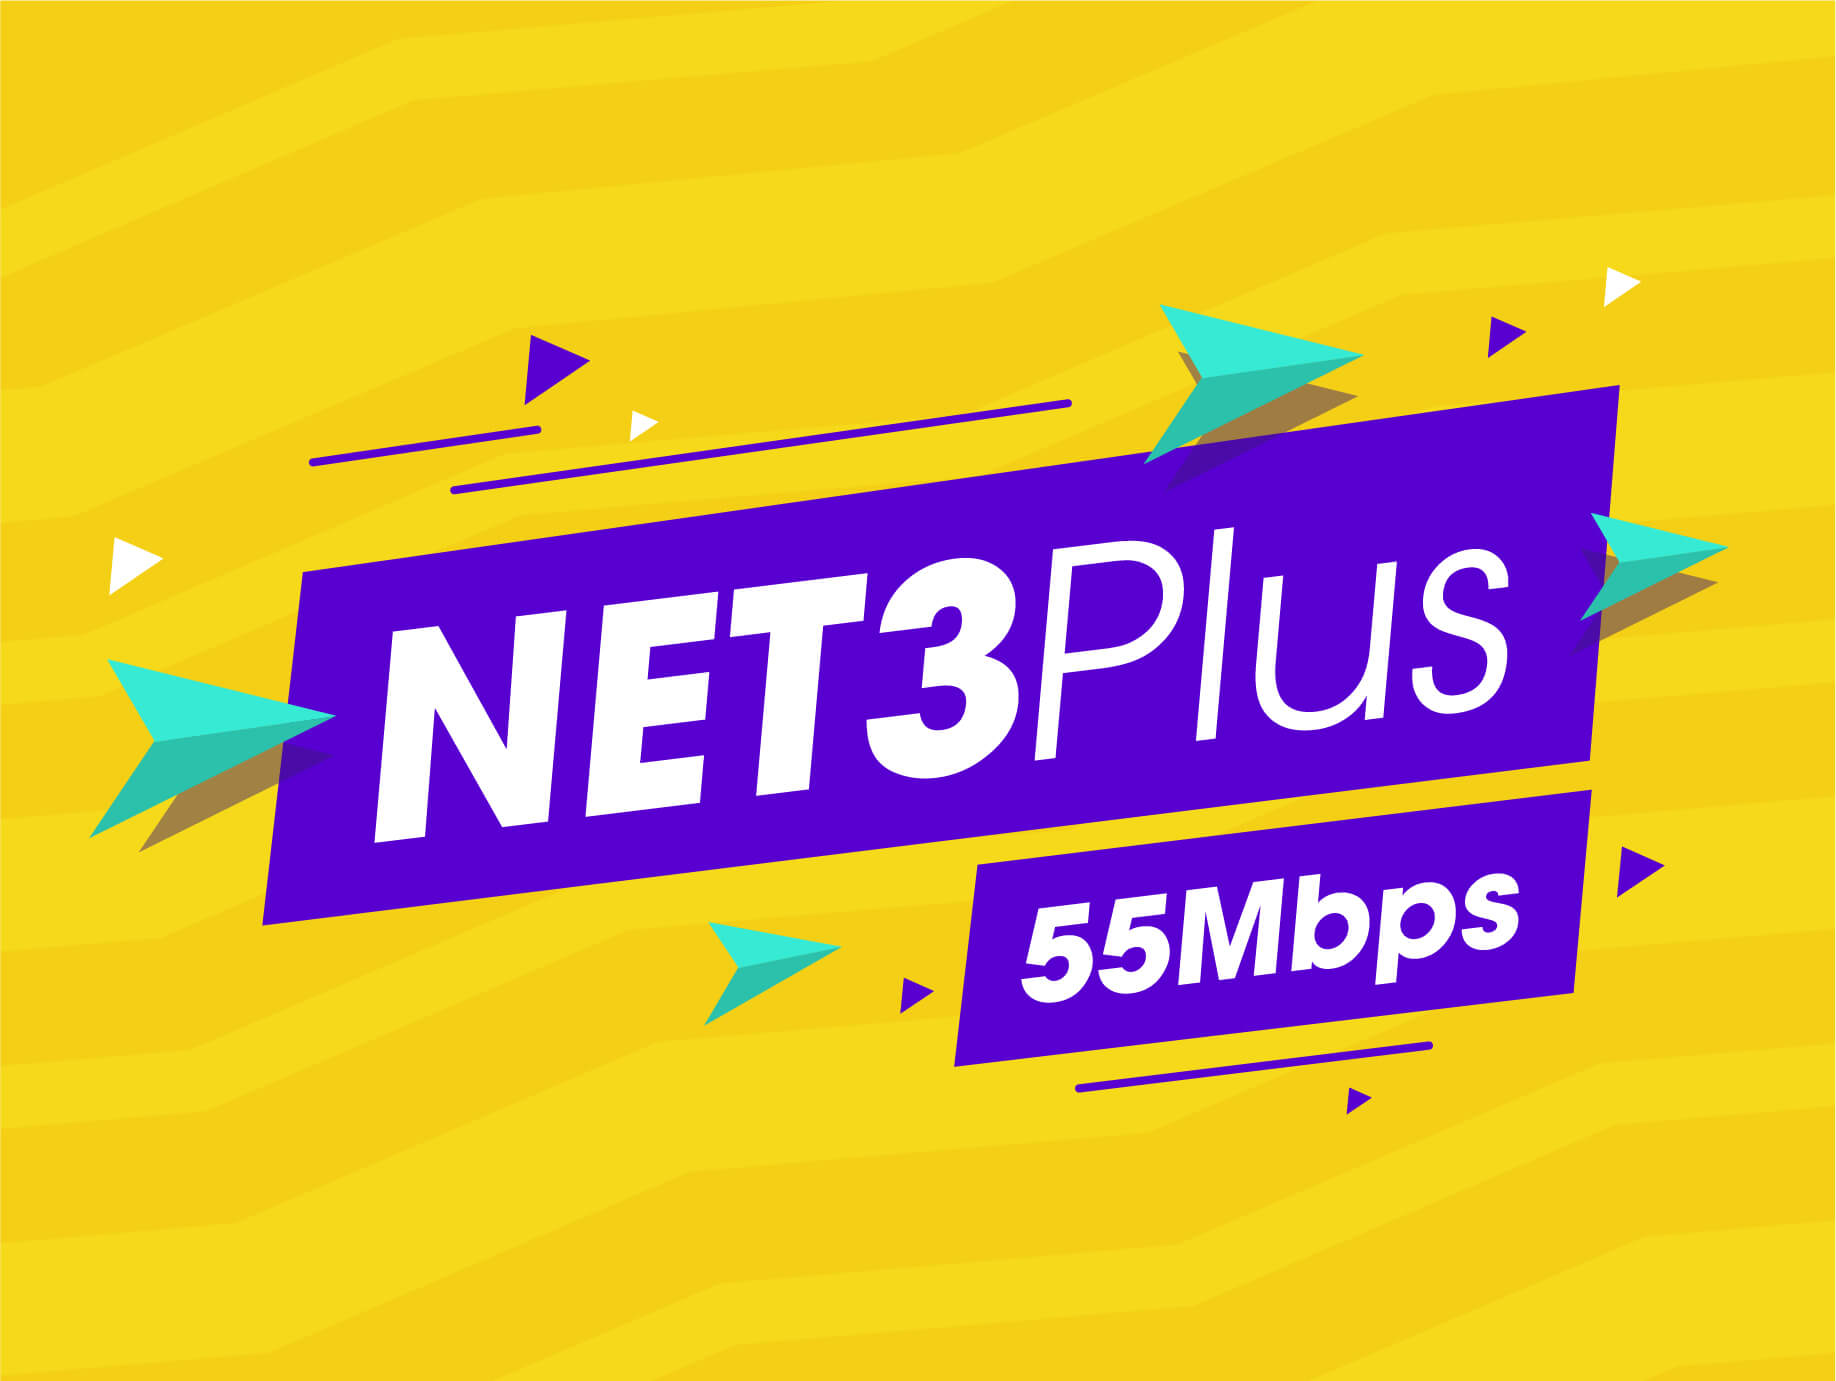 Net 3 plus Viettel 55 Mbps